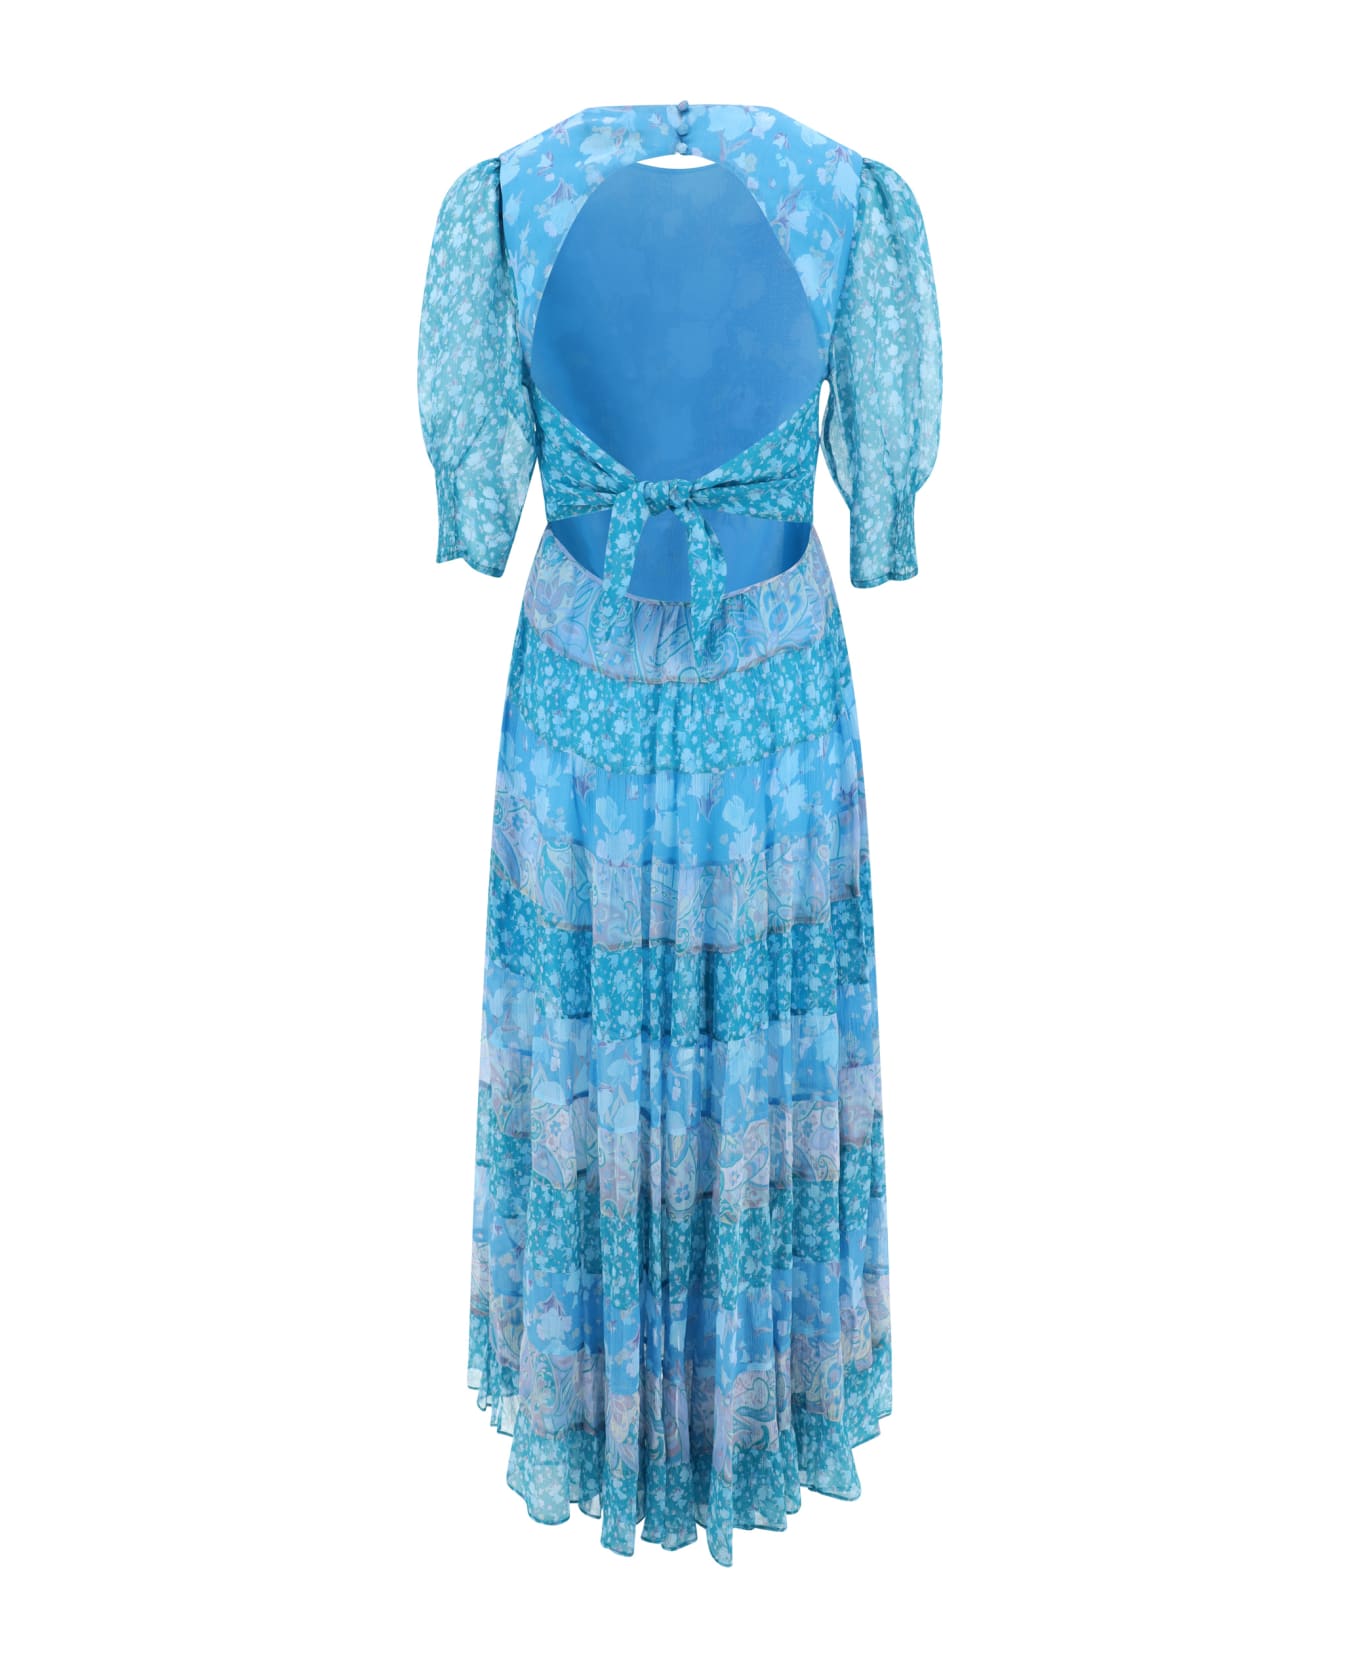 RIXO Agyness Dress - Havana Floral Blue Mix